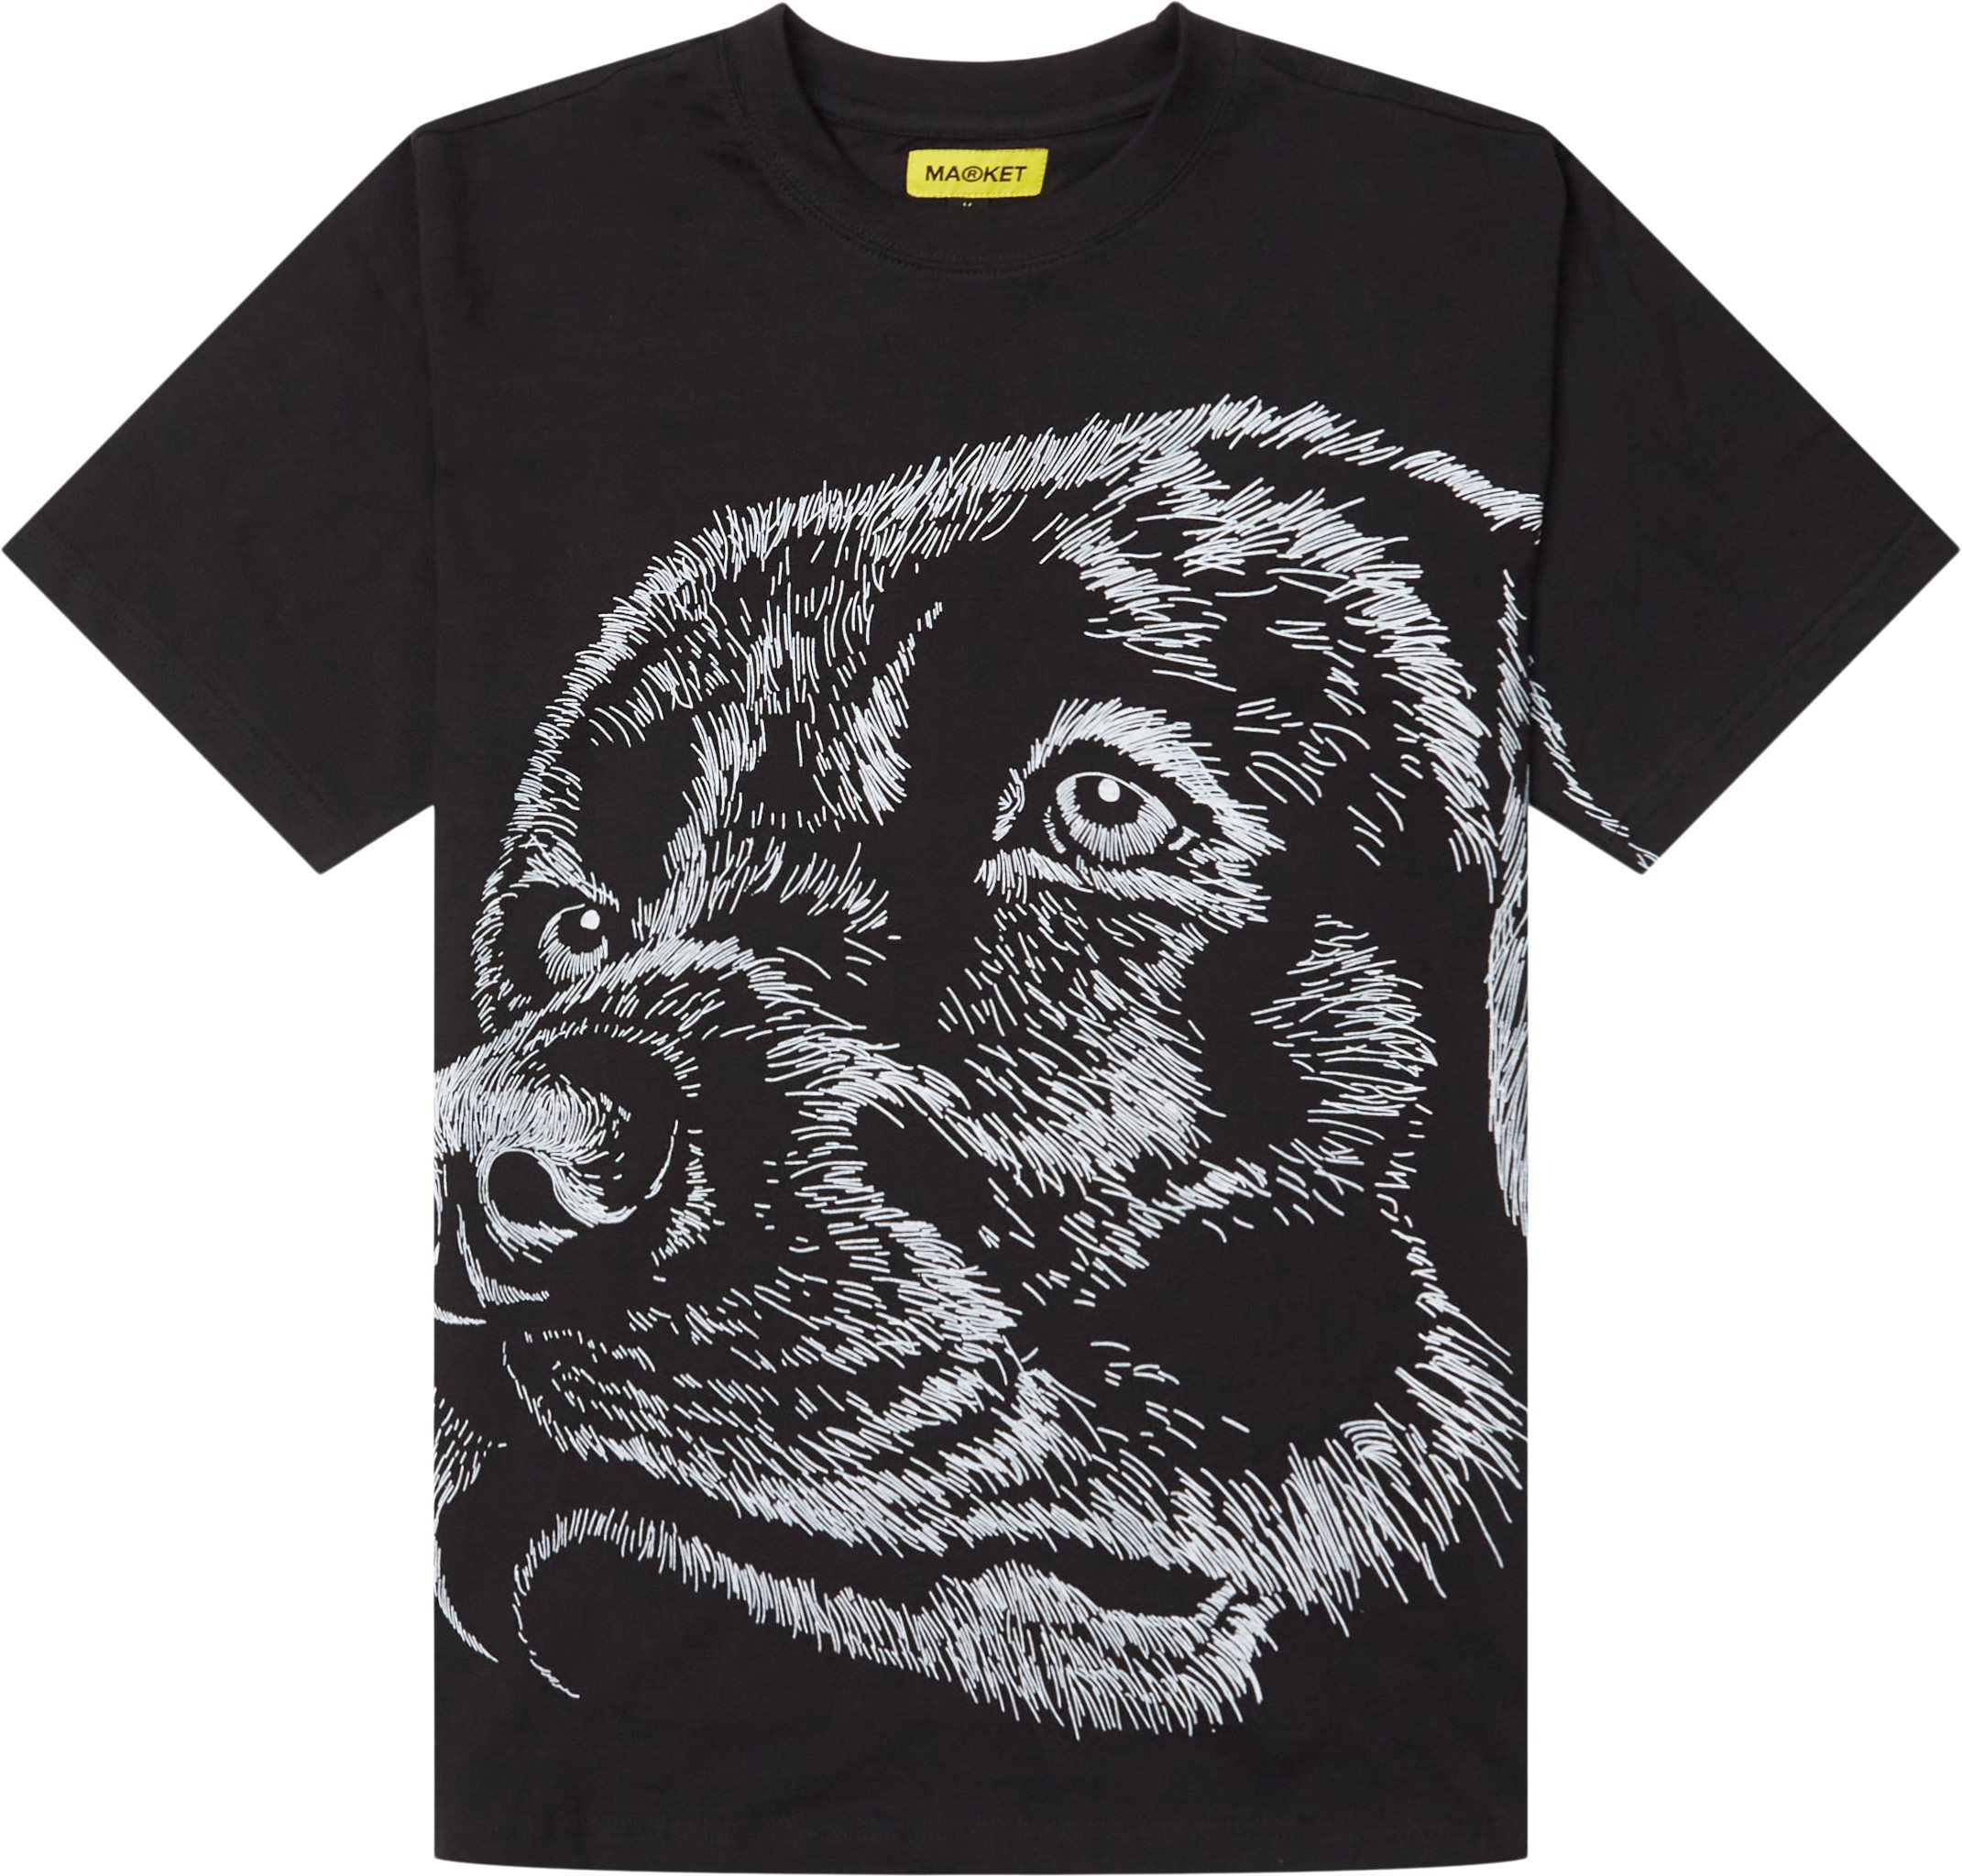 Guard Dog Maximum Security Tee - T-shirts - Regular fit - Sort